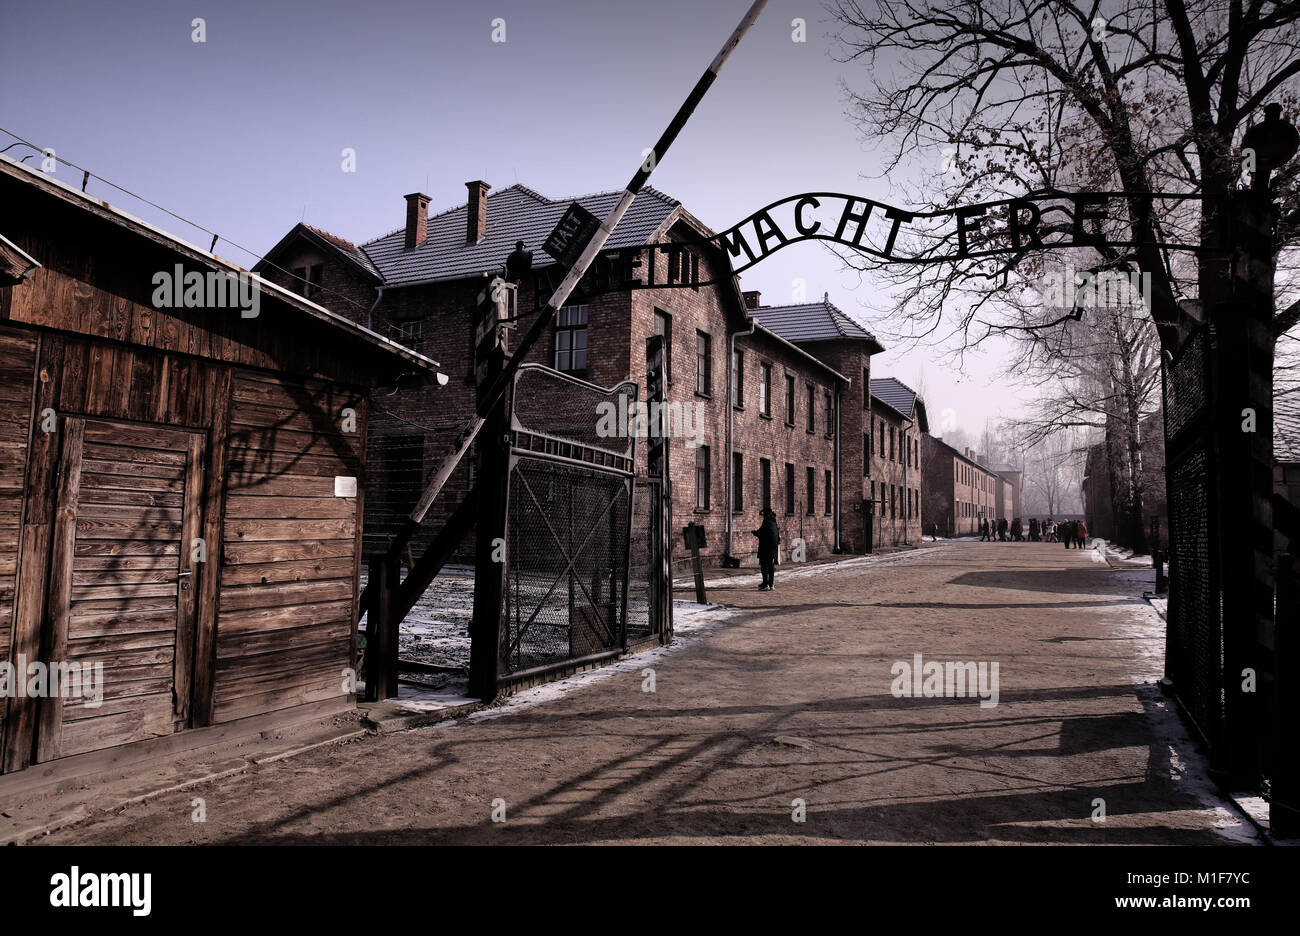 Eingang zu Auschwitz I, kühlen iconic Signage 'Arbeit macht frei' - Arbeit macht frei Stockfoto